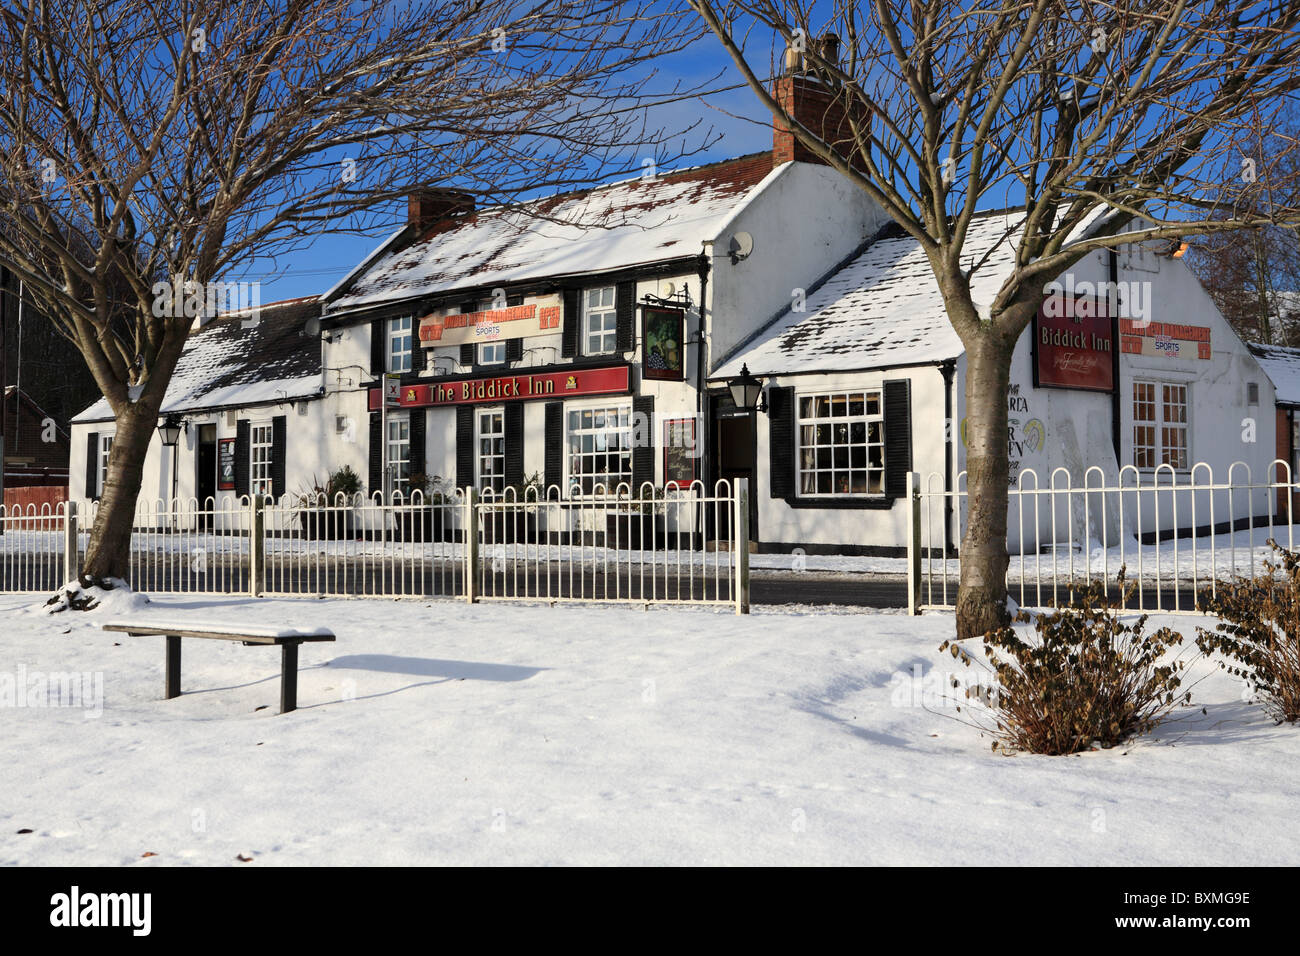 L'Biddick Inn, un pub, Washington, Tyne et Wear, Angleterre, vu dans des conditions hivernales. Banque D'Images